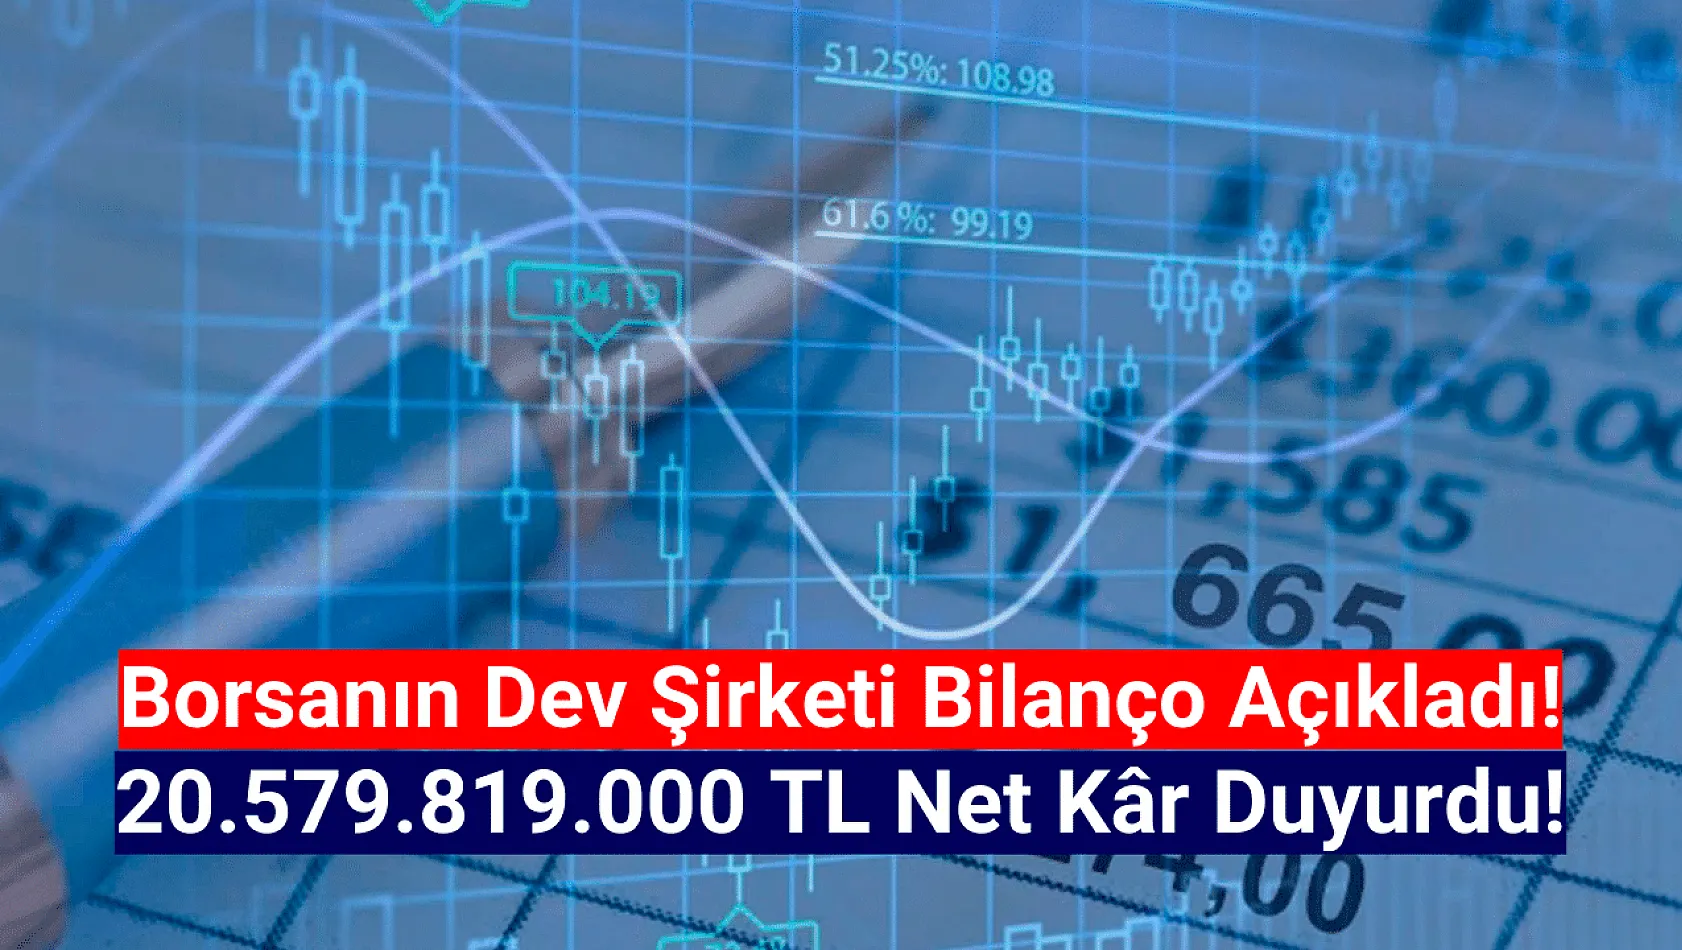 Borsanın devi 20.579.819.000 TL net kâr açıkladı!